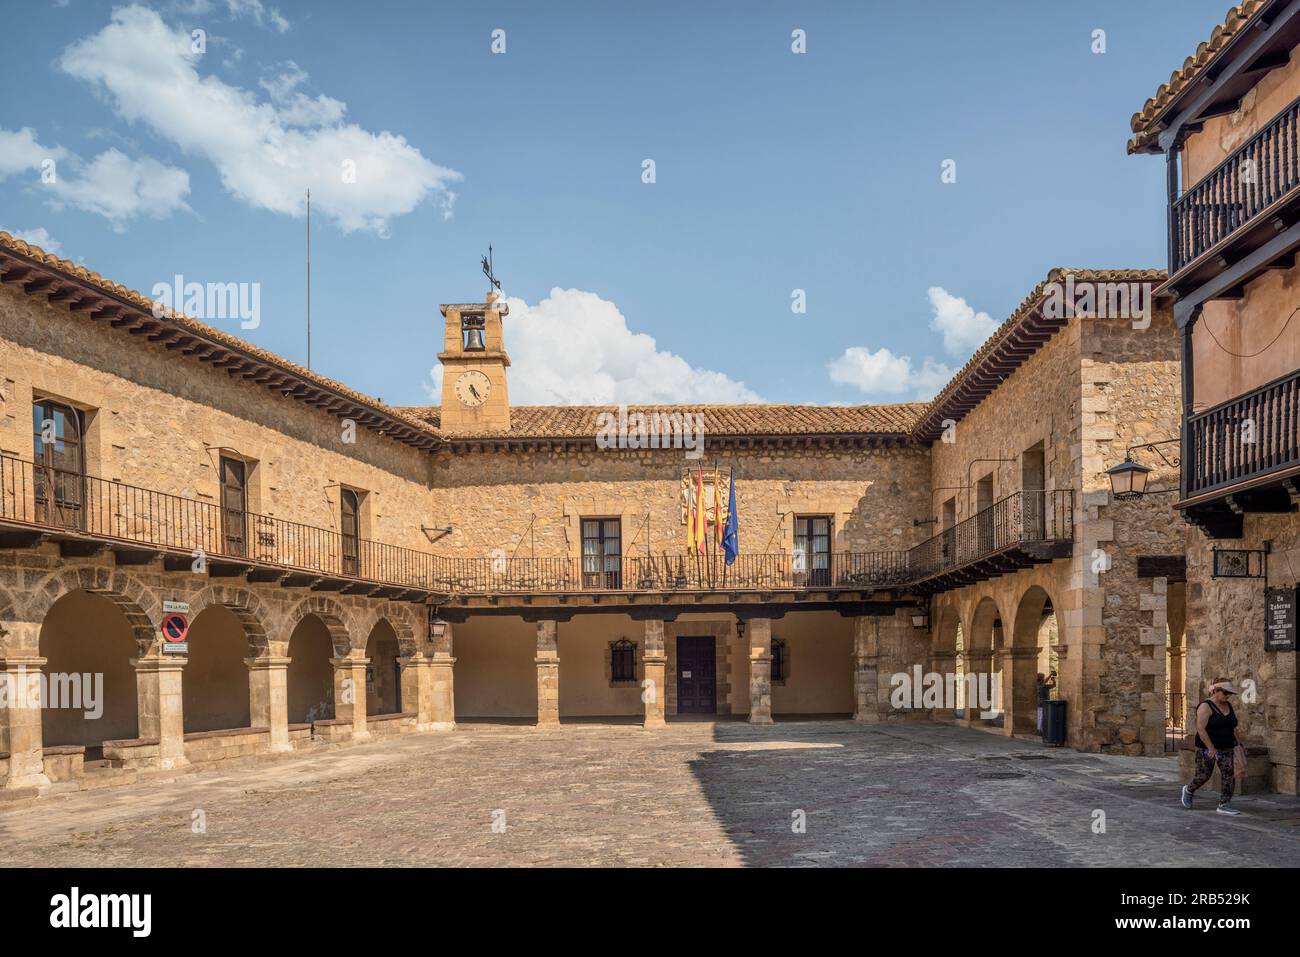 Albarracín place principale pavée, entourée de bâtiments médiévaux tels que l'hôtel de ville du 14e siècle. Teruel, Aragon, Espagne, Europe Banque D'Images